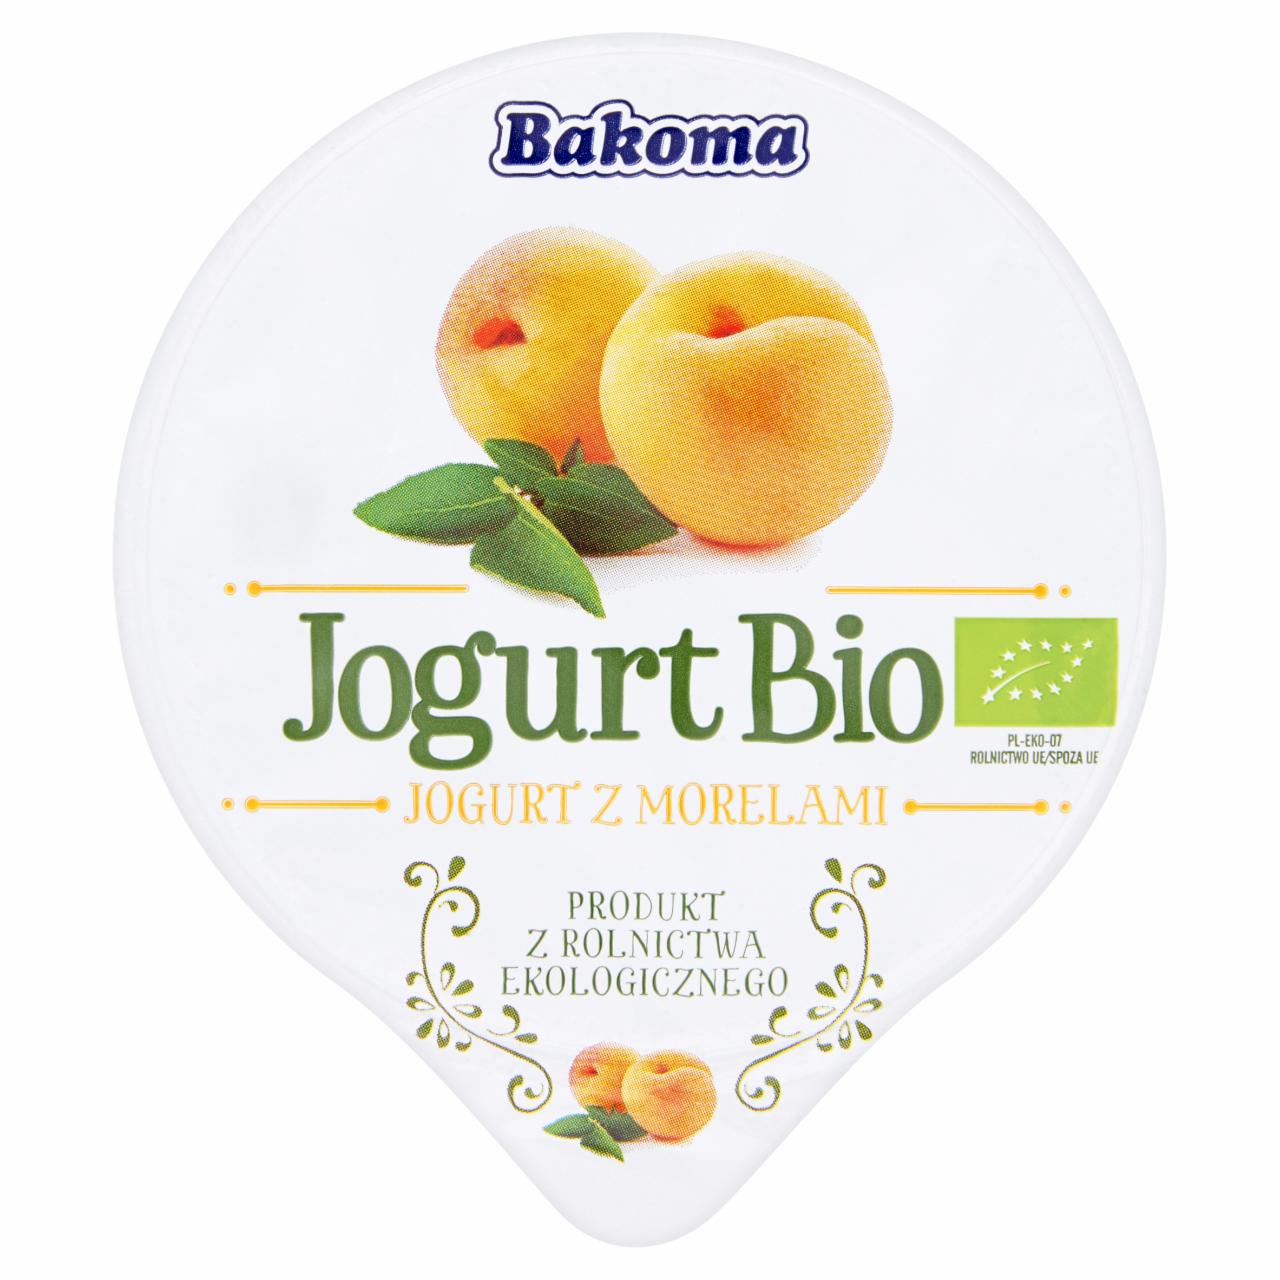 Zdjęcia - Jogurt Bio z morelami Bakoma